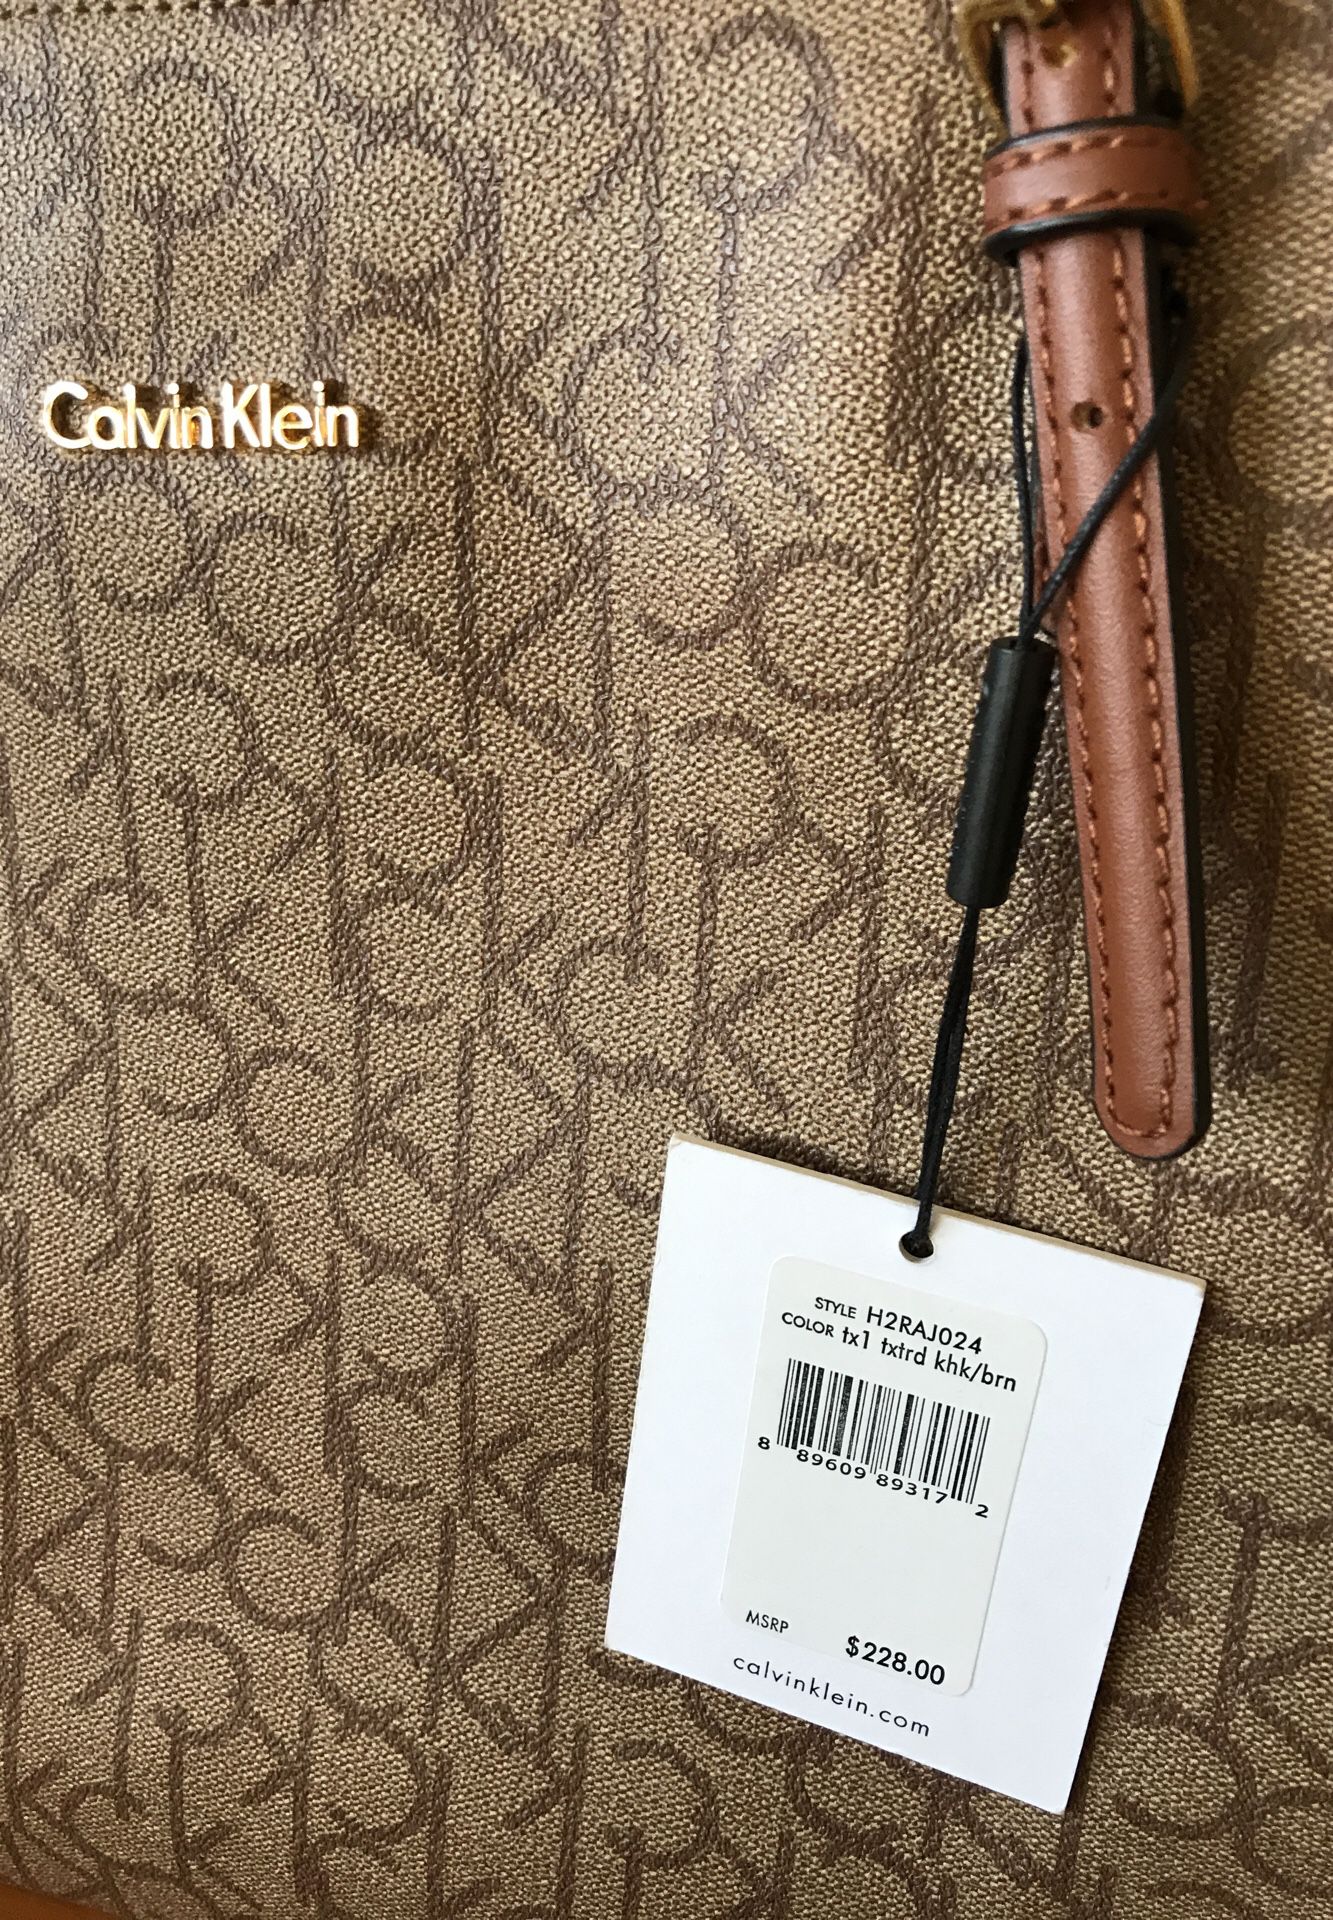 Calvin Klein Saffiano Leather Tote for Sale in Chula Vista, CA - OfferUp